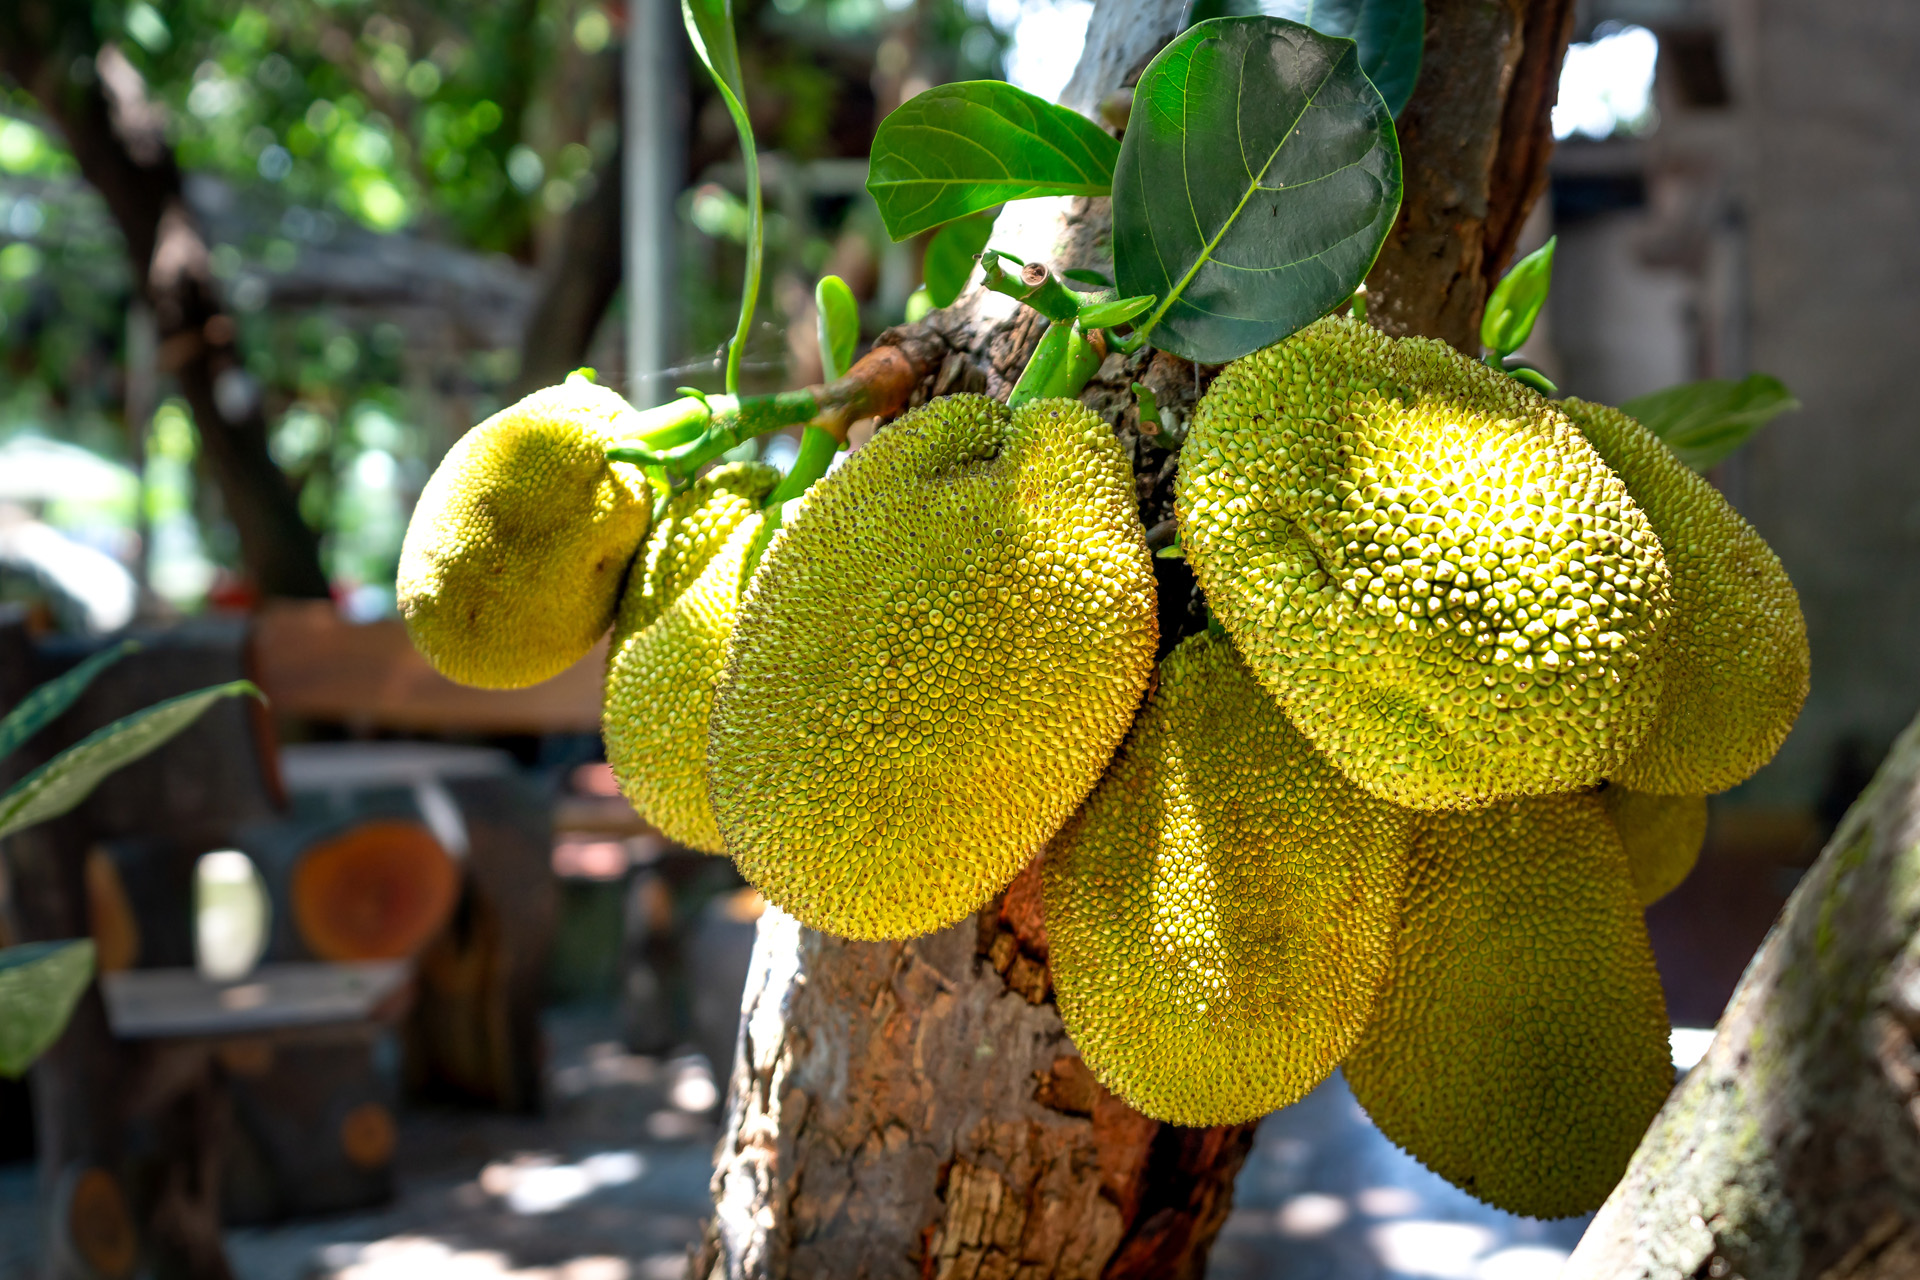 jackfruit growing on trees